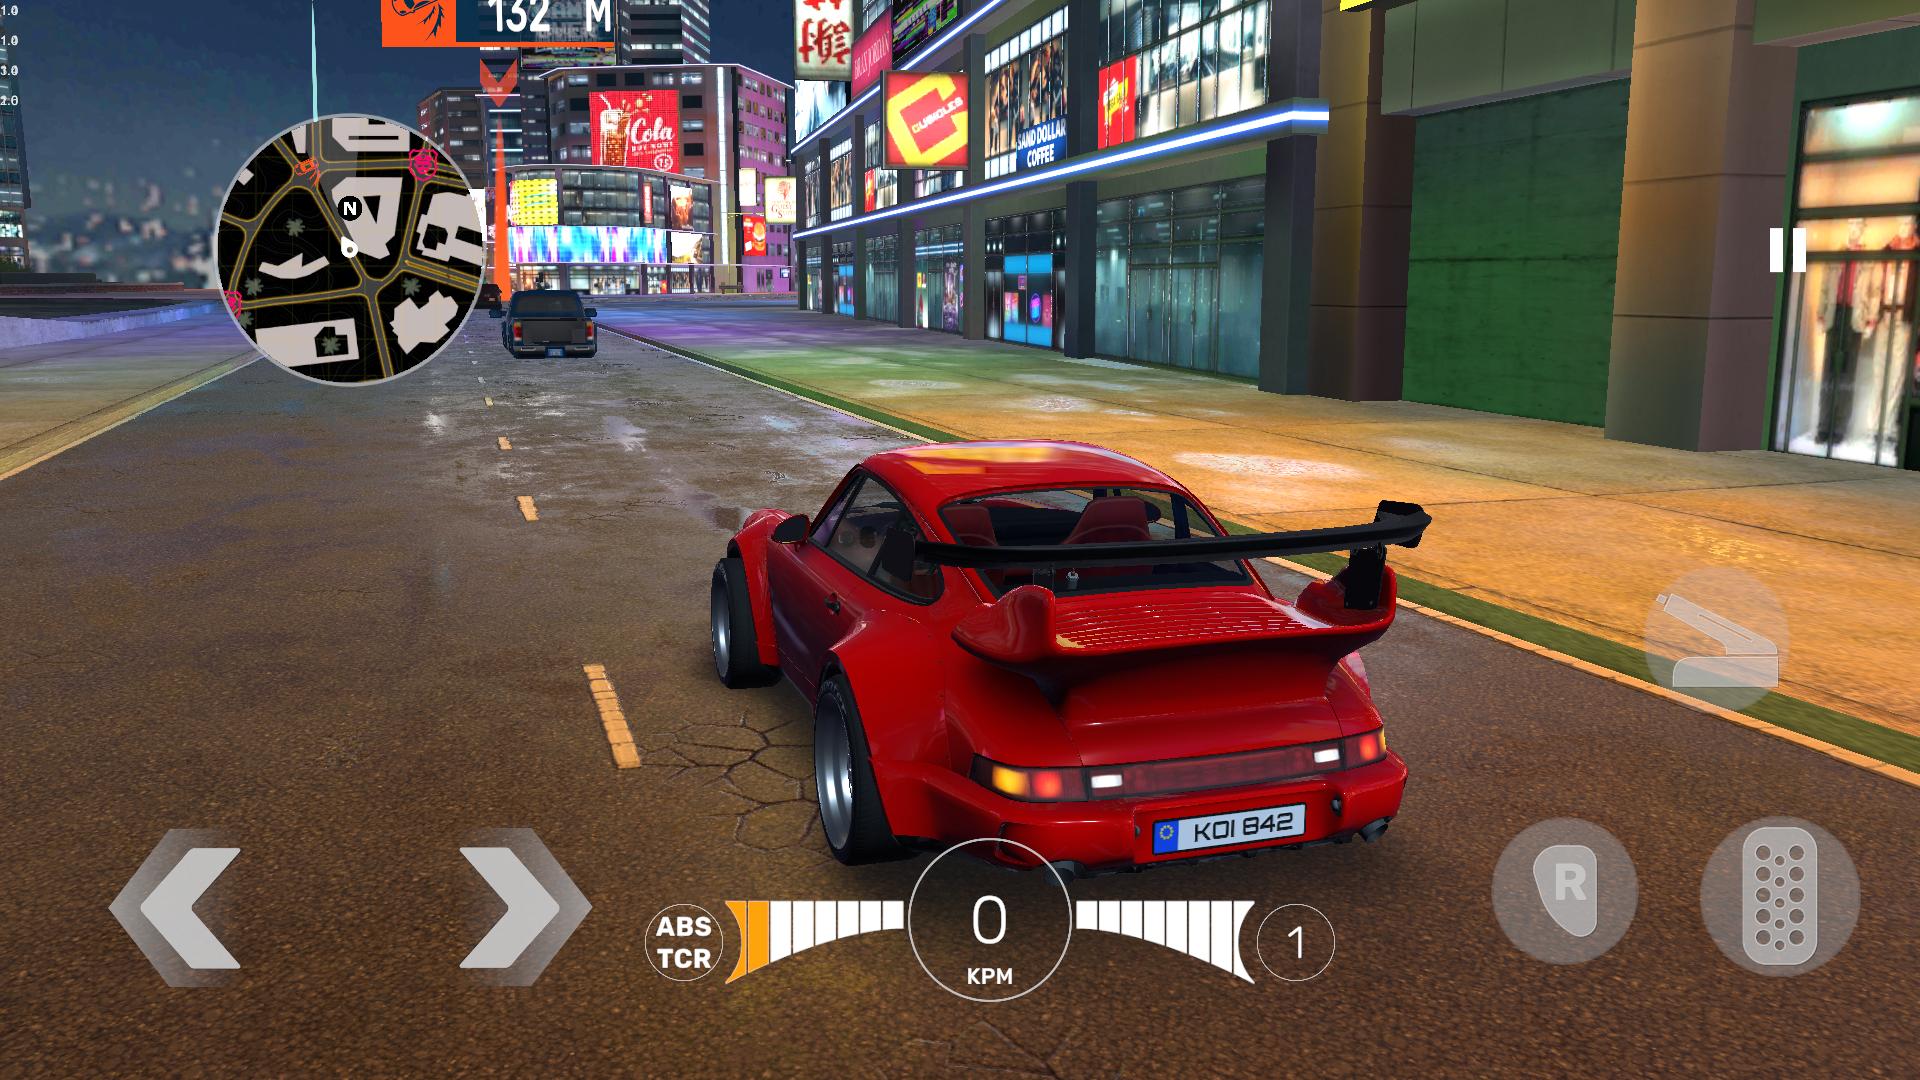 Screenshot 1 of Simulator Mengemudi Mobil Pro 0.3.6